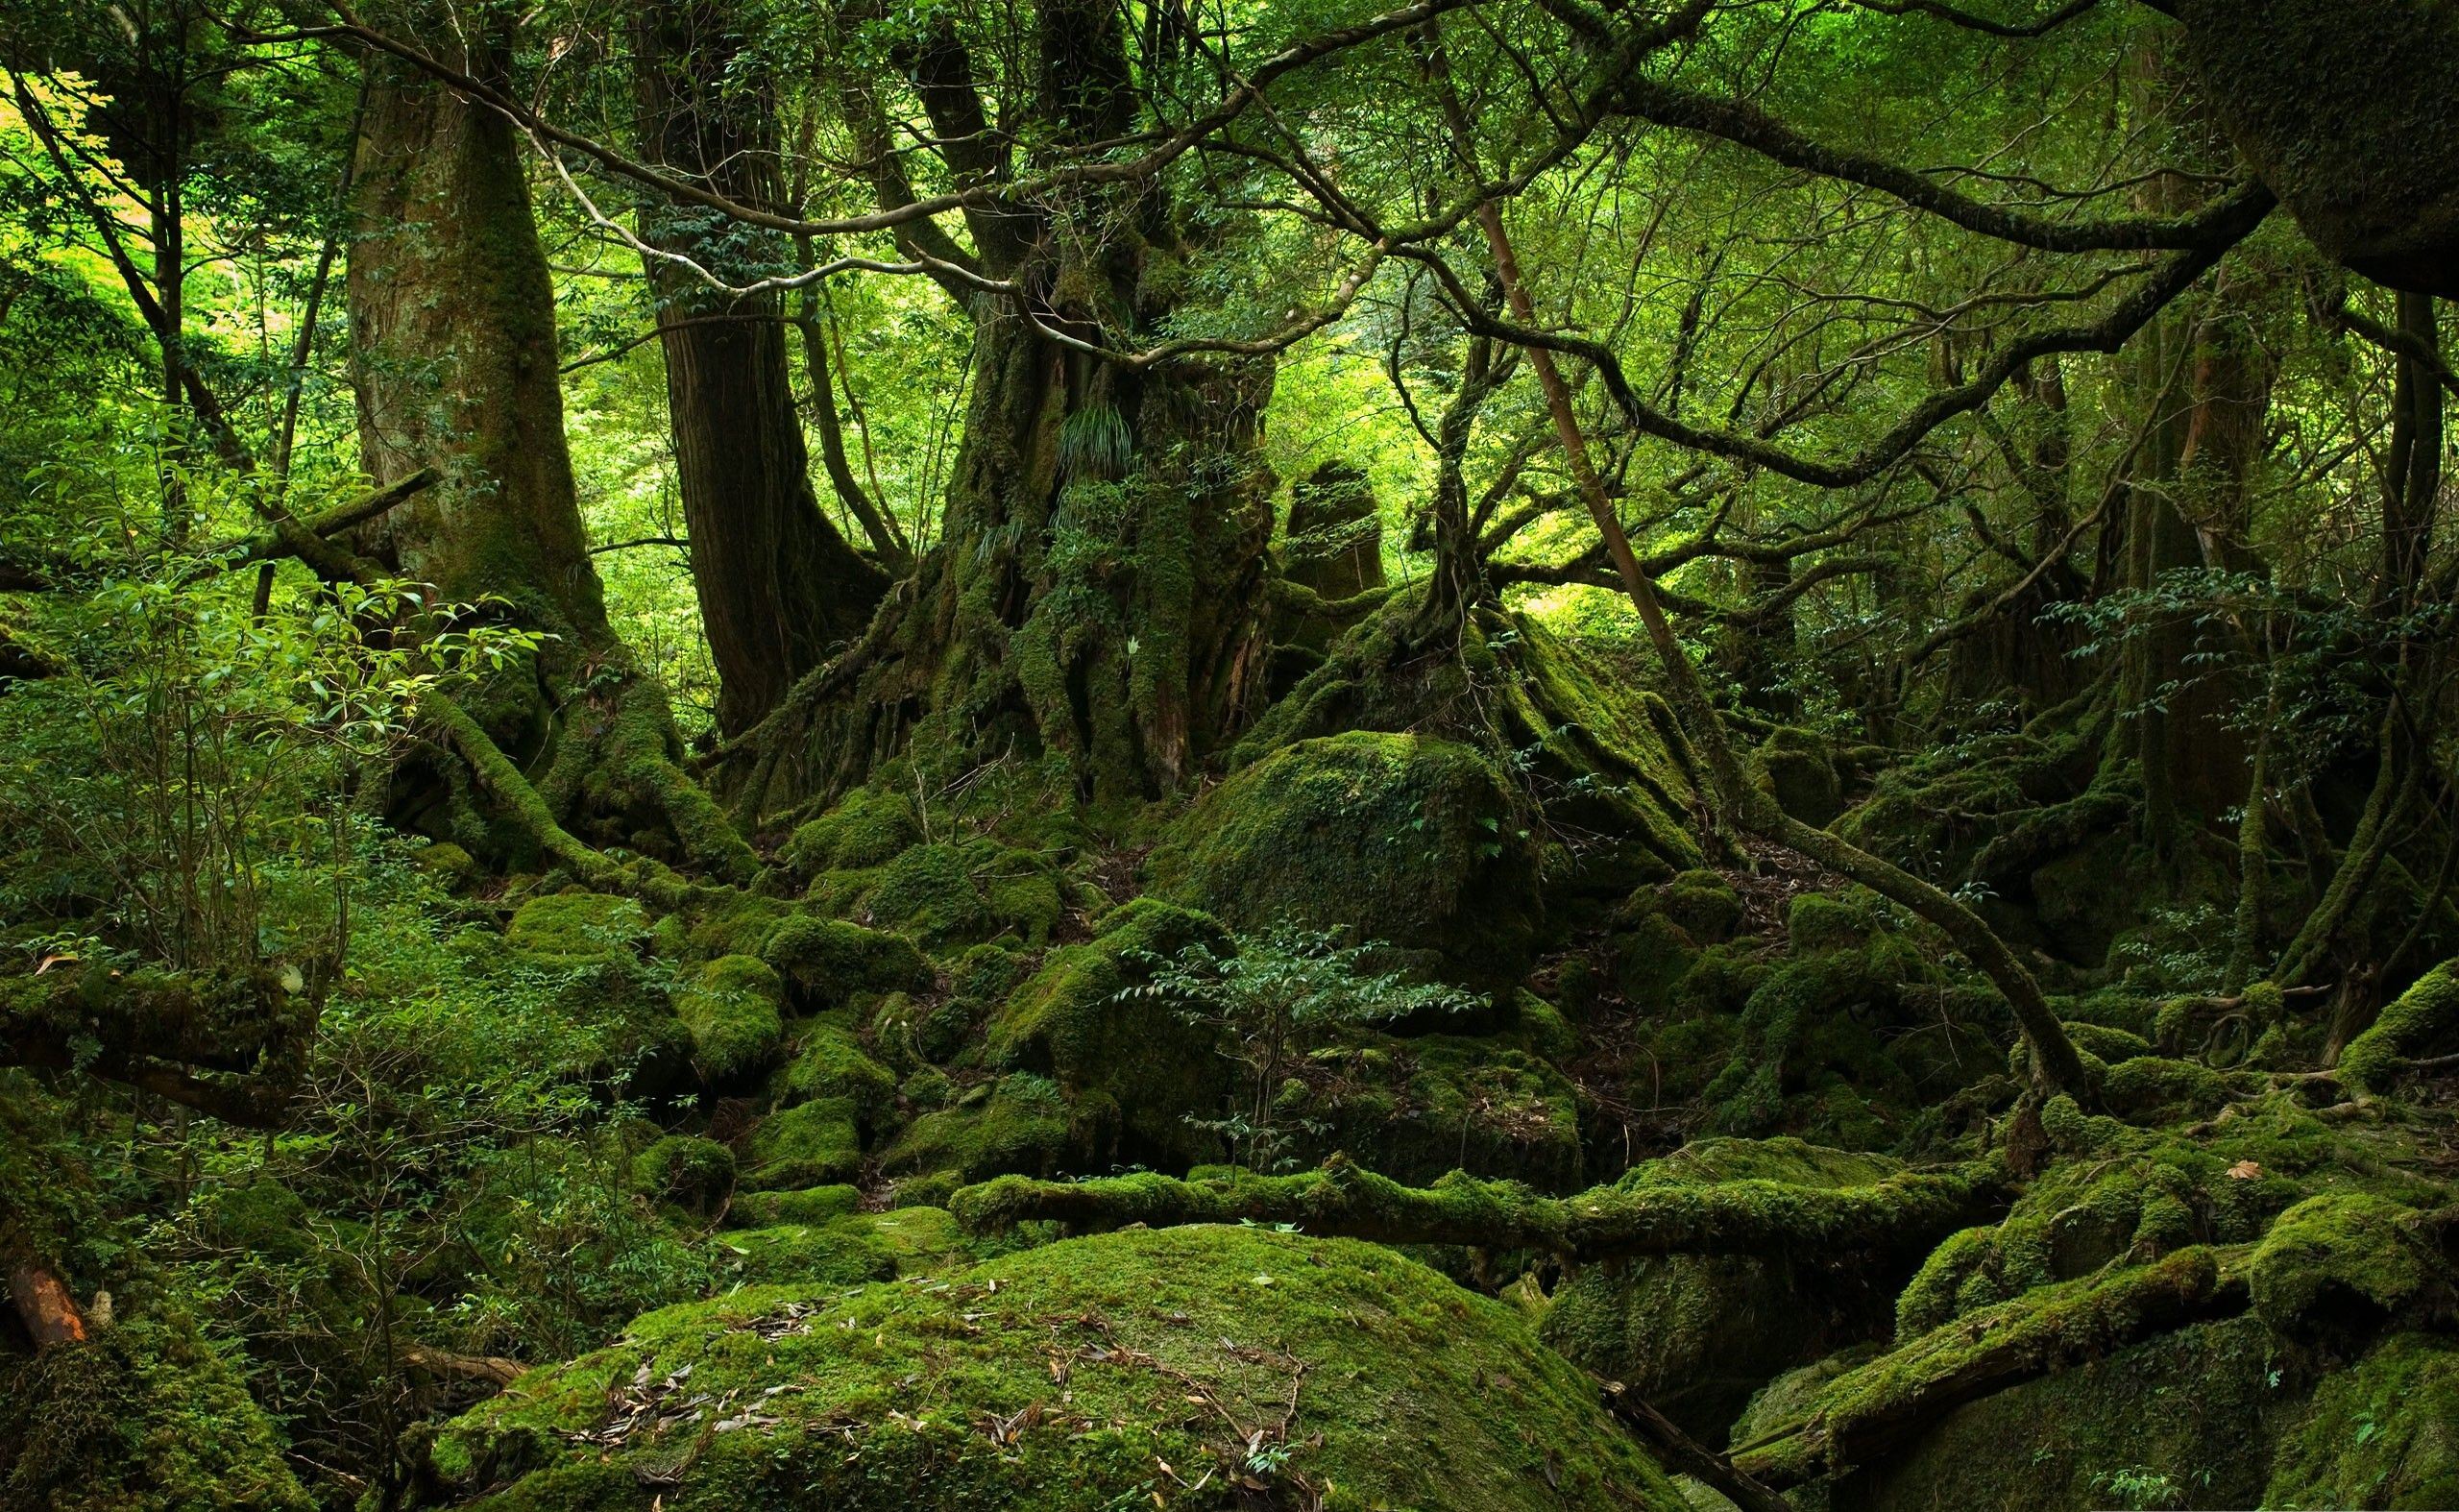 دانلود عکس از جنگل بارانی استوایی با کیفیت بالا برای چاپ